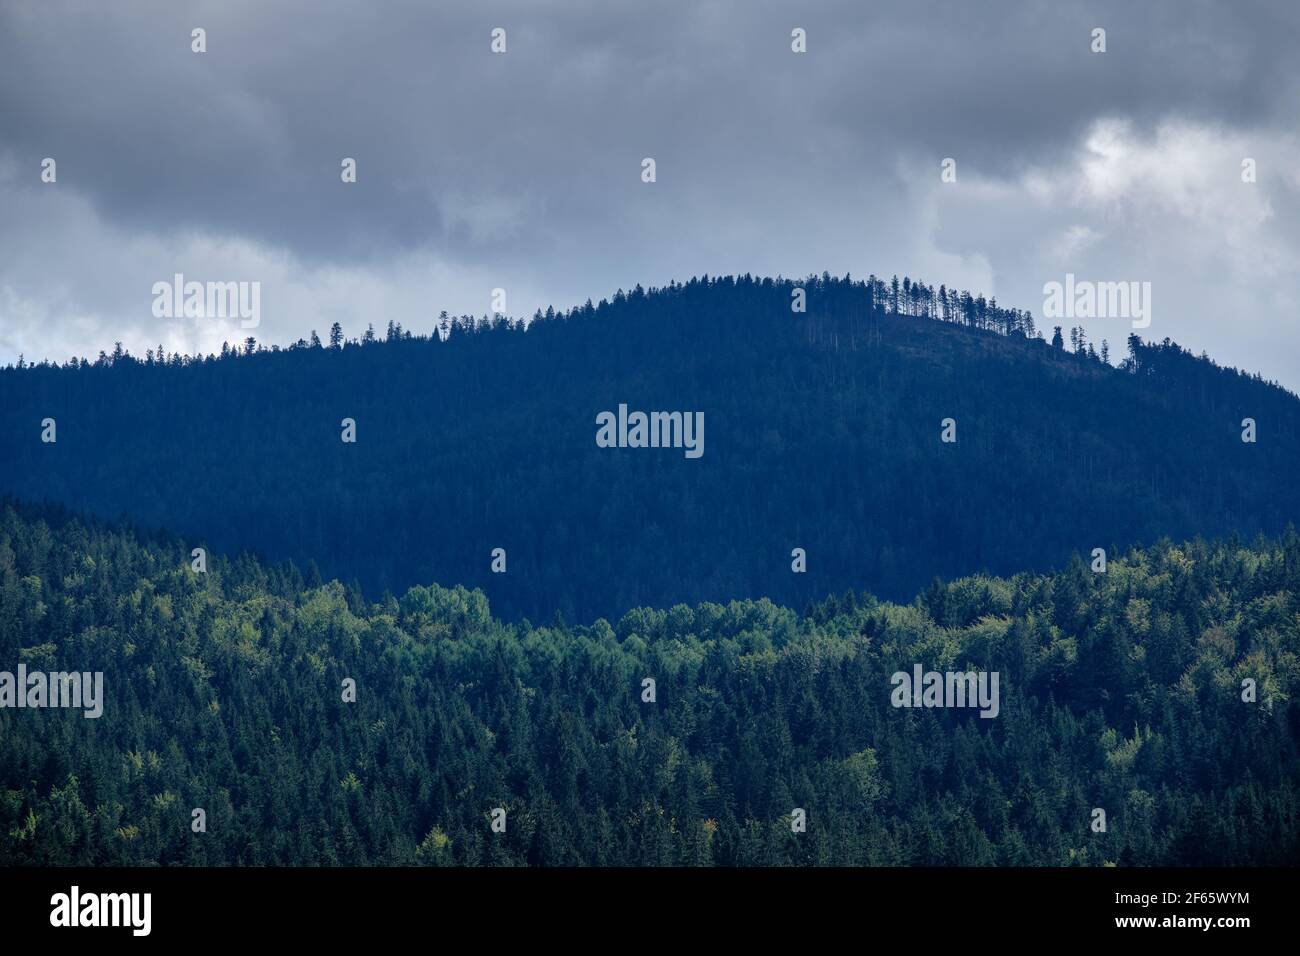 Vista sulle montagne boscose della Foresta Bavarese intorno a Frahels - Lam con nuvole grigie che si frappongono alcune piogge estive. Visto in Germania nel mese di agosto. Foto Stock